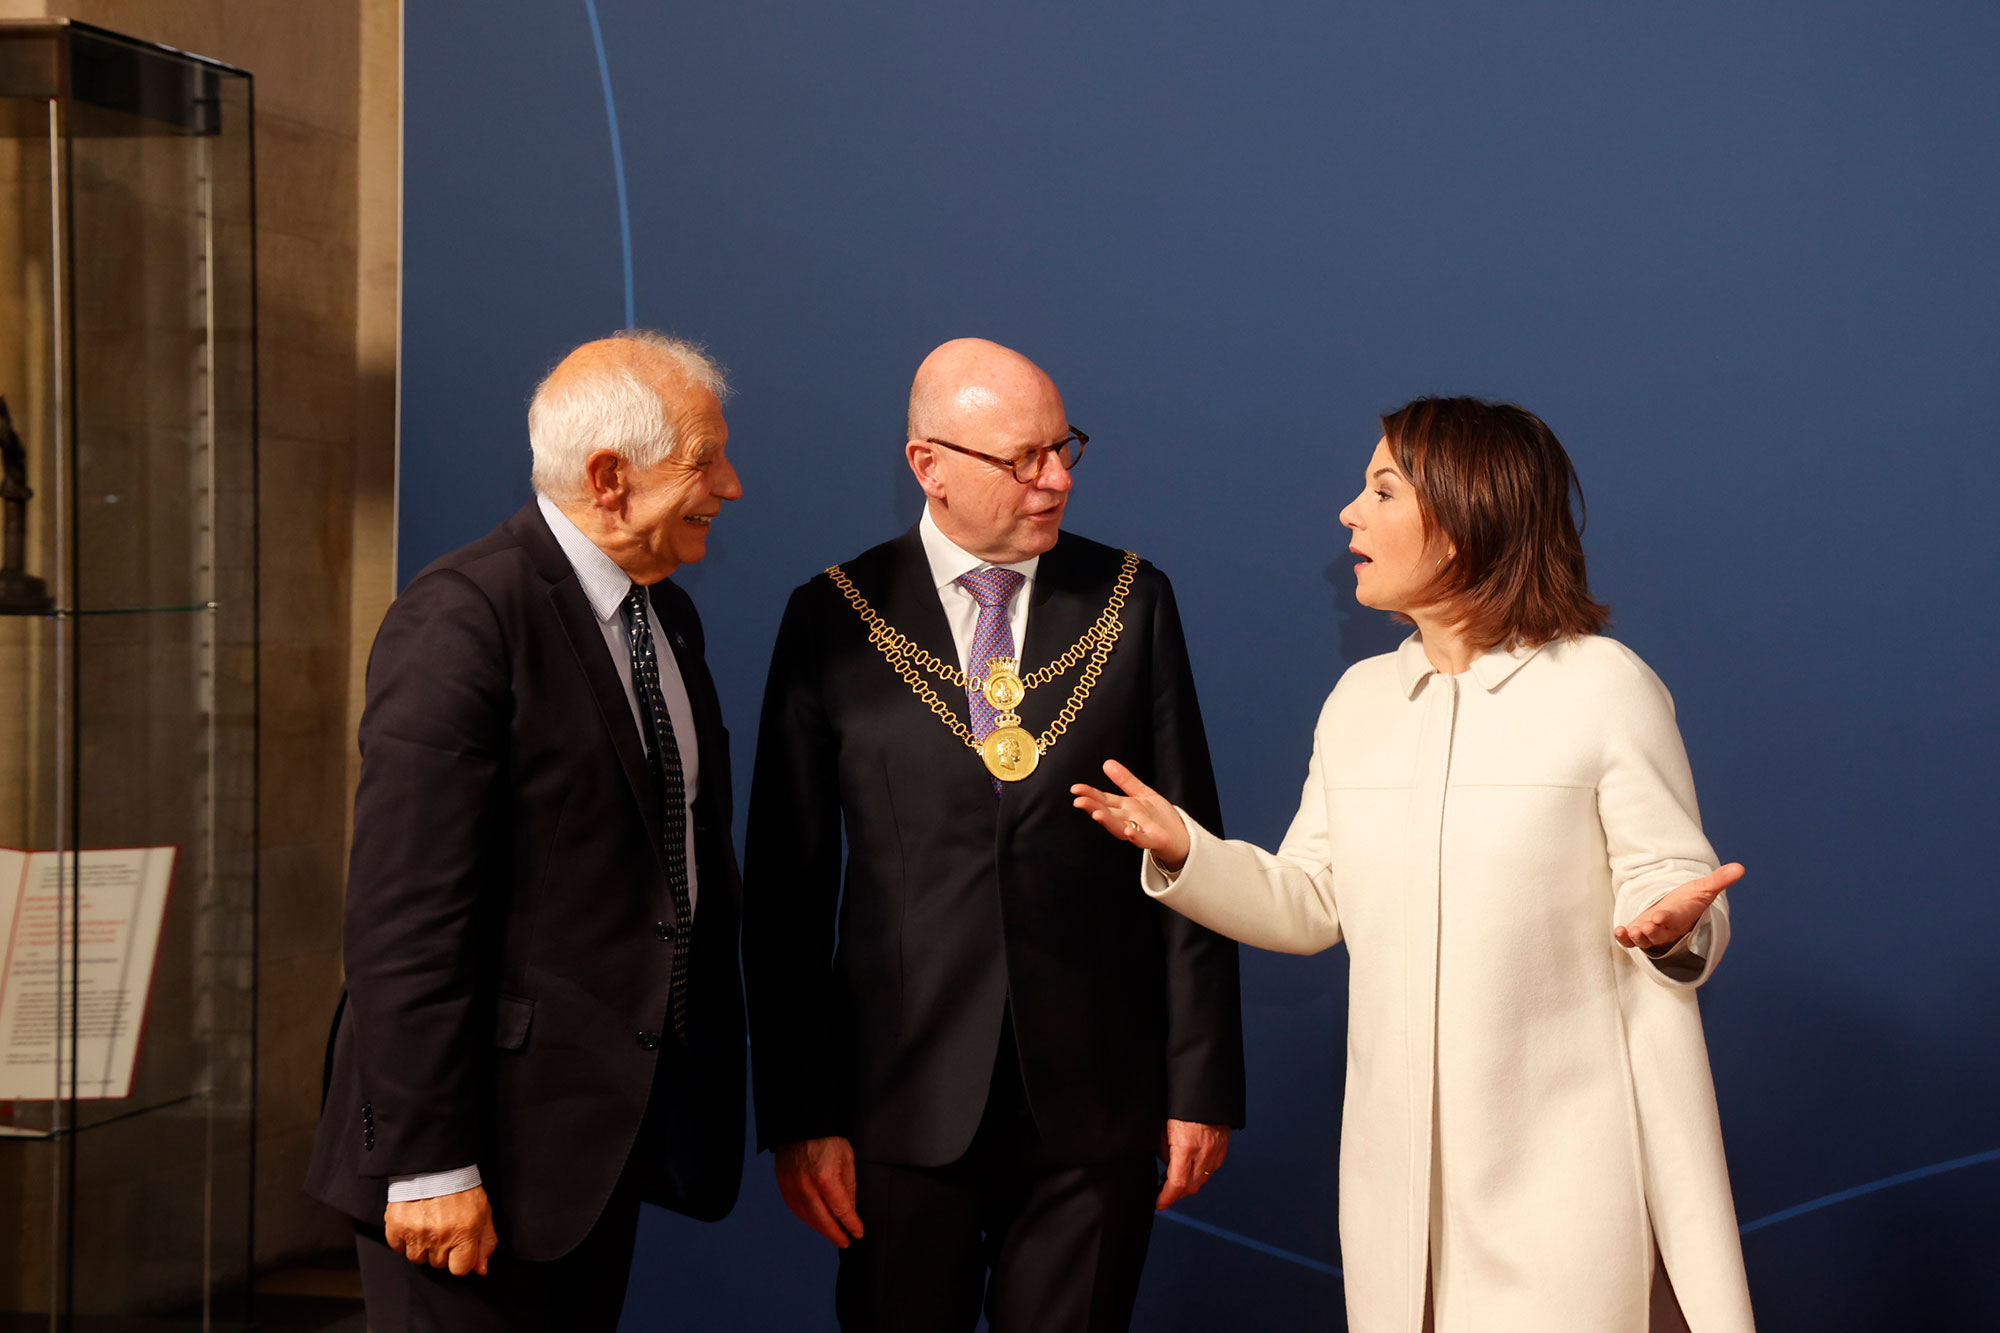 Oberbürgermeister Markus Lewe (M.) begrüßte unter anderem die deutsche Außenministerin und Gastgeberin Annalena Baerbock sowie Josep Borrell, den Außenbeauftragten der Europäischen Union, im historischen Rathaus. 